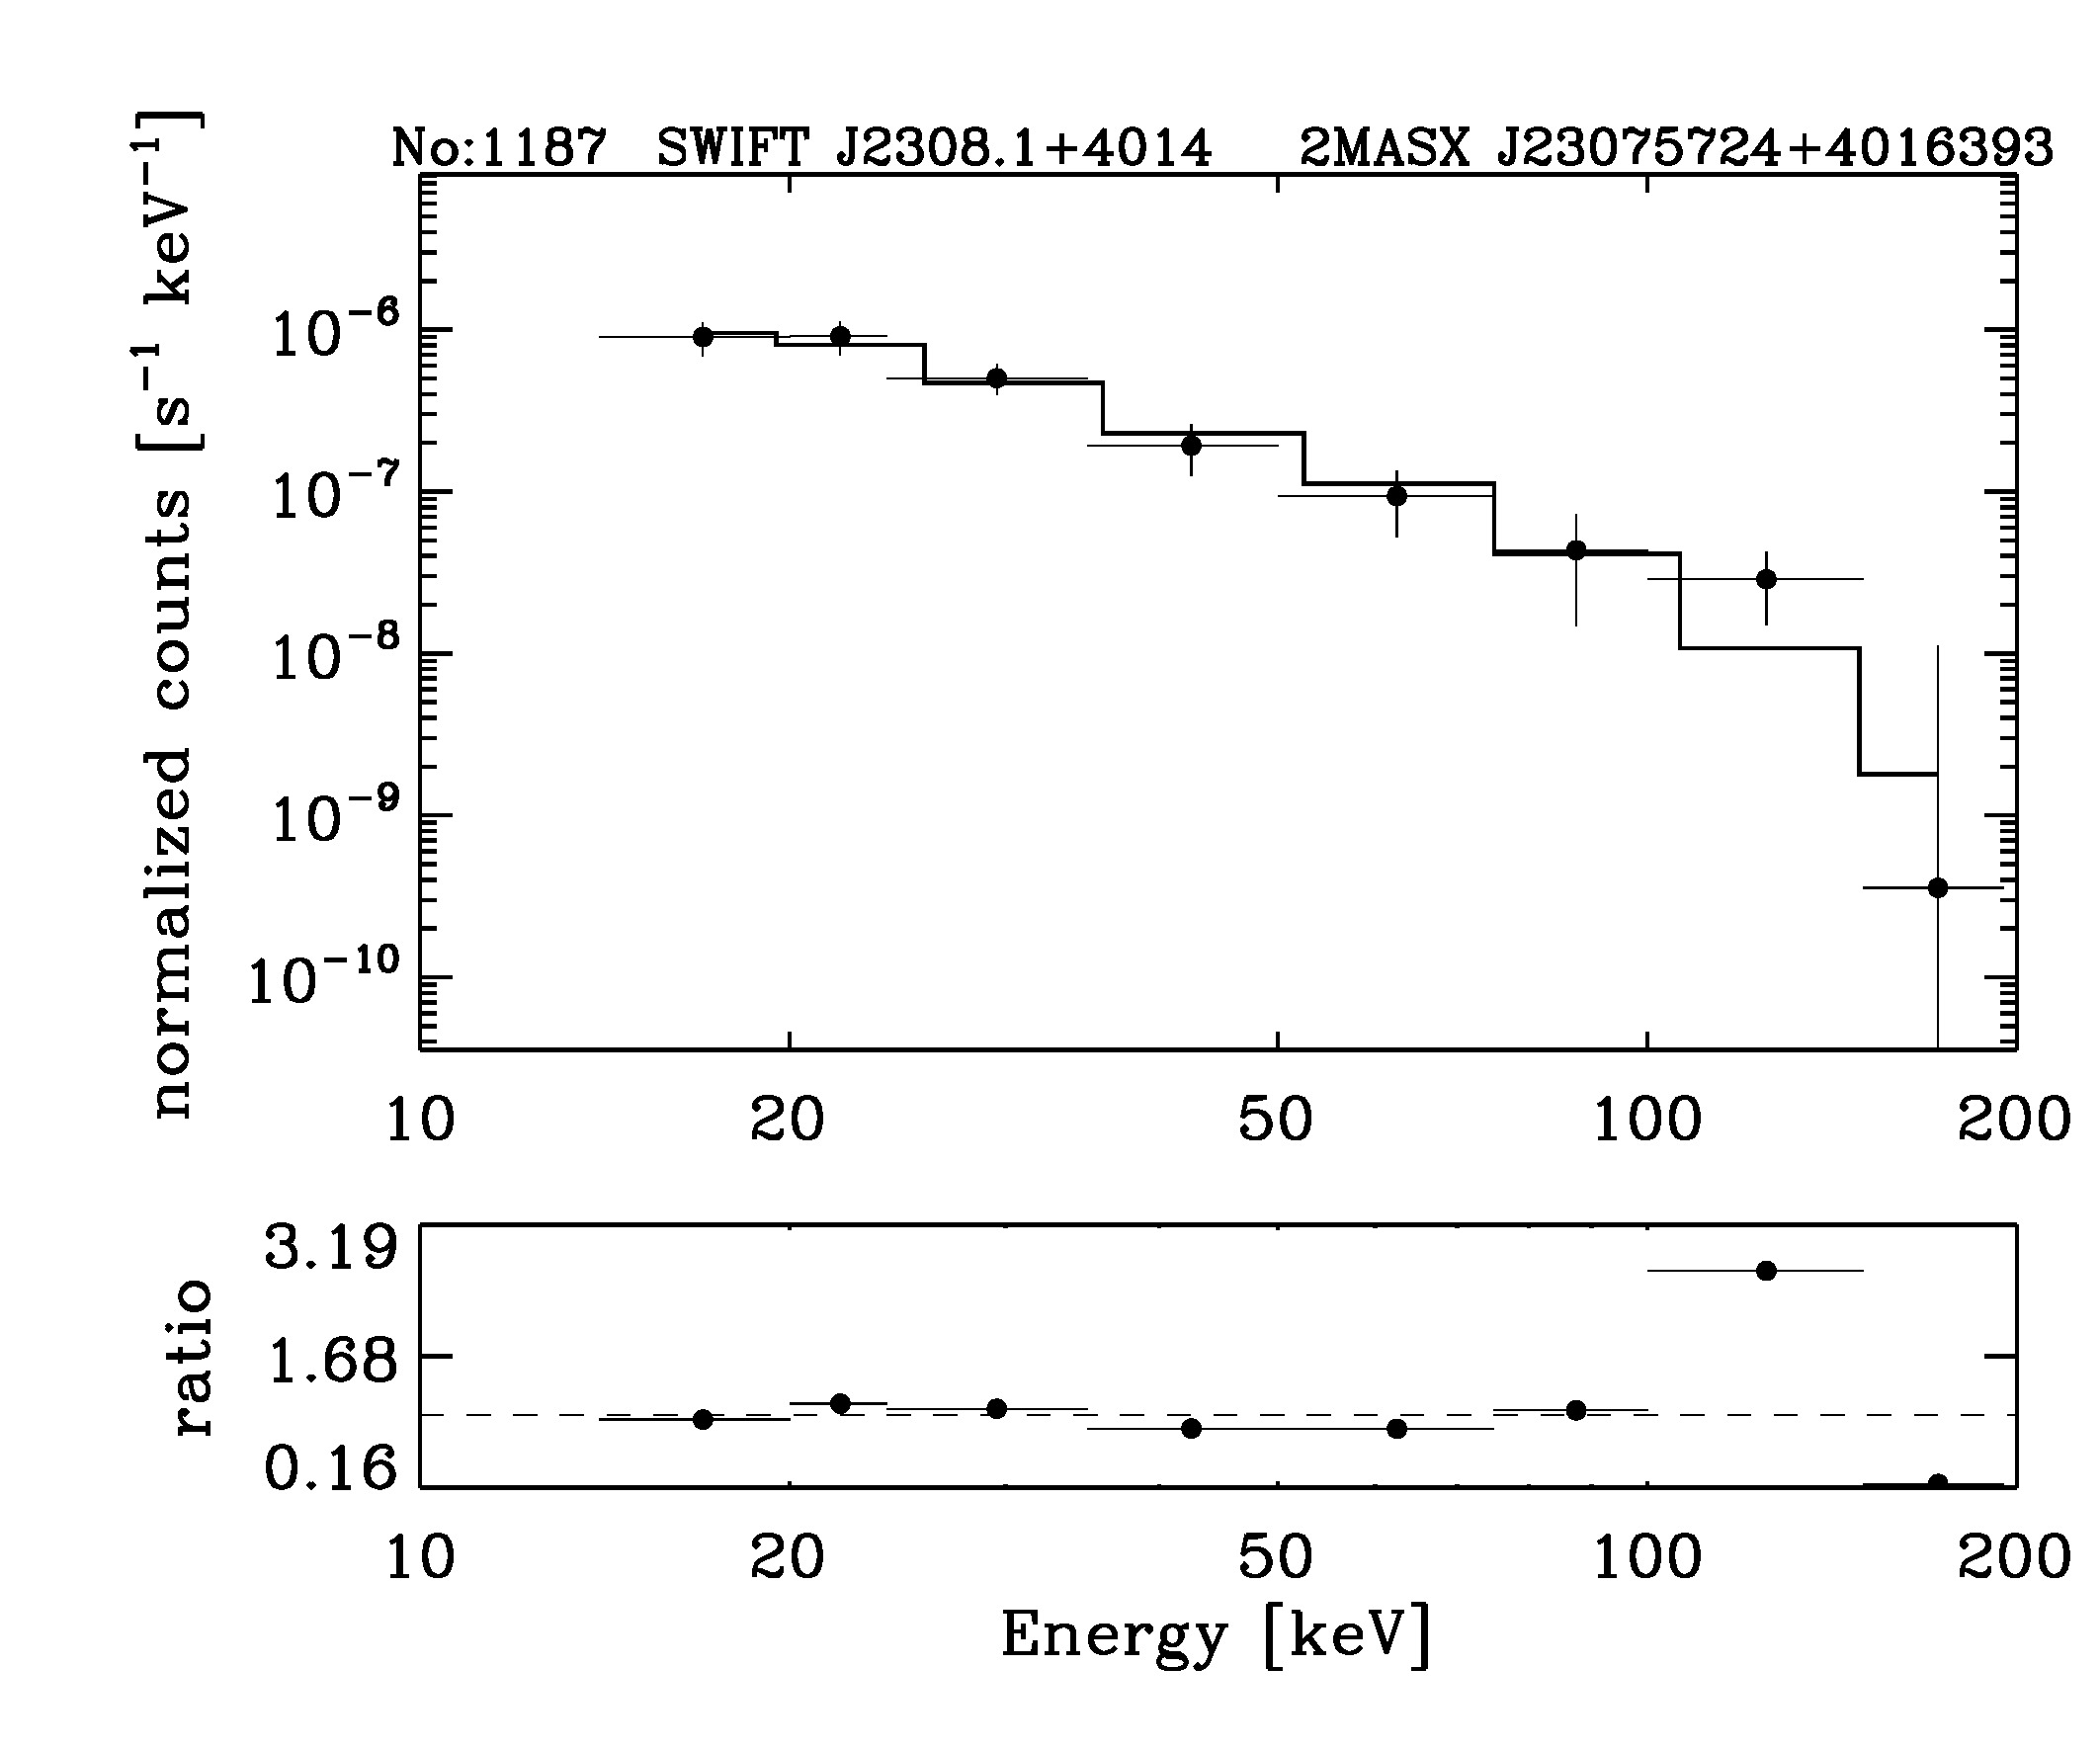 BAT Spectrum for SWIFT J2308.1+4014